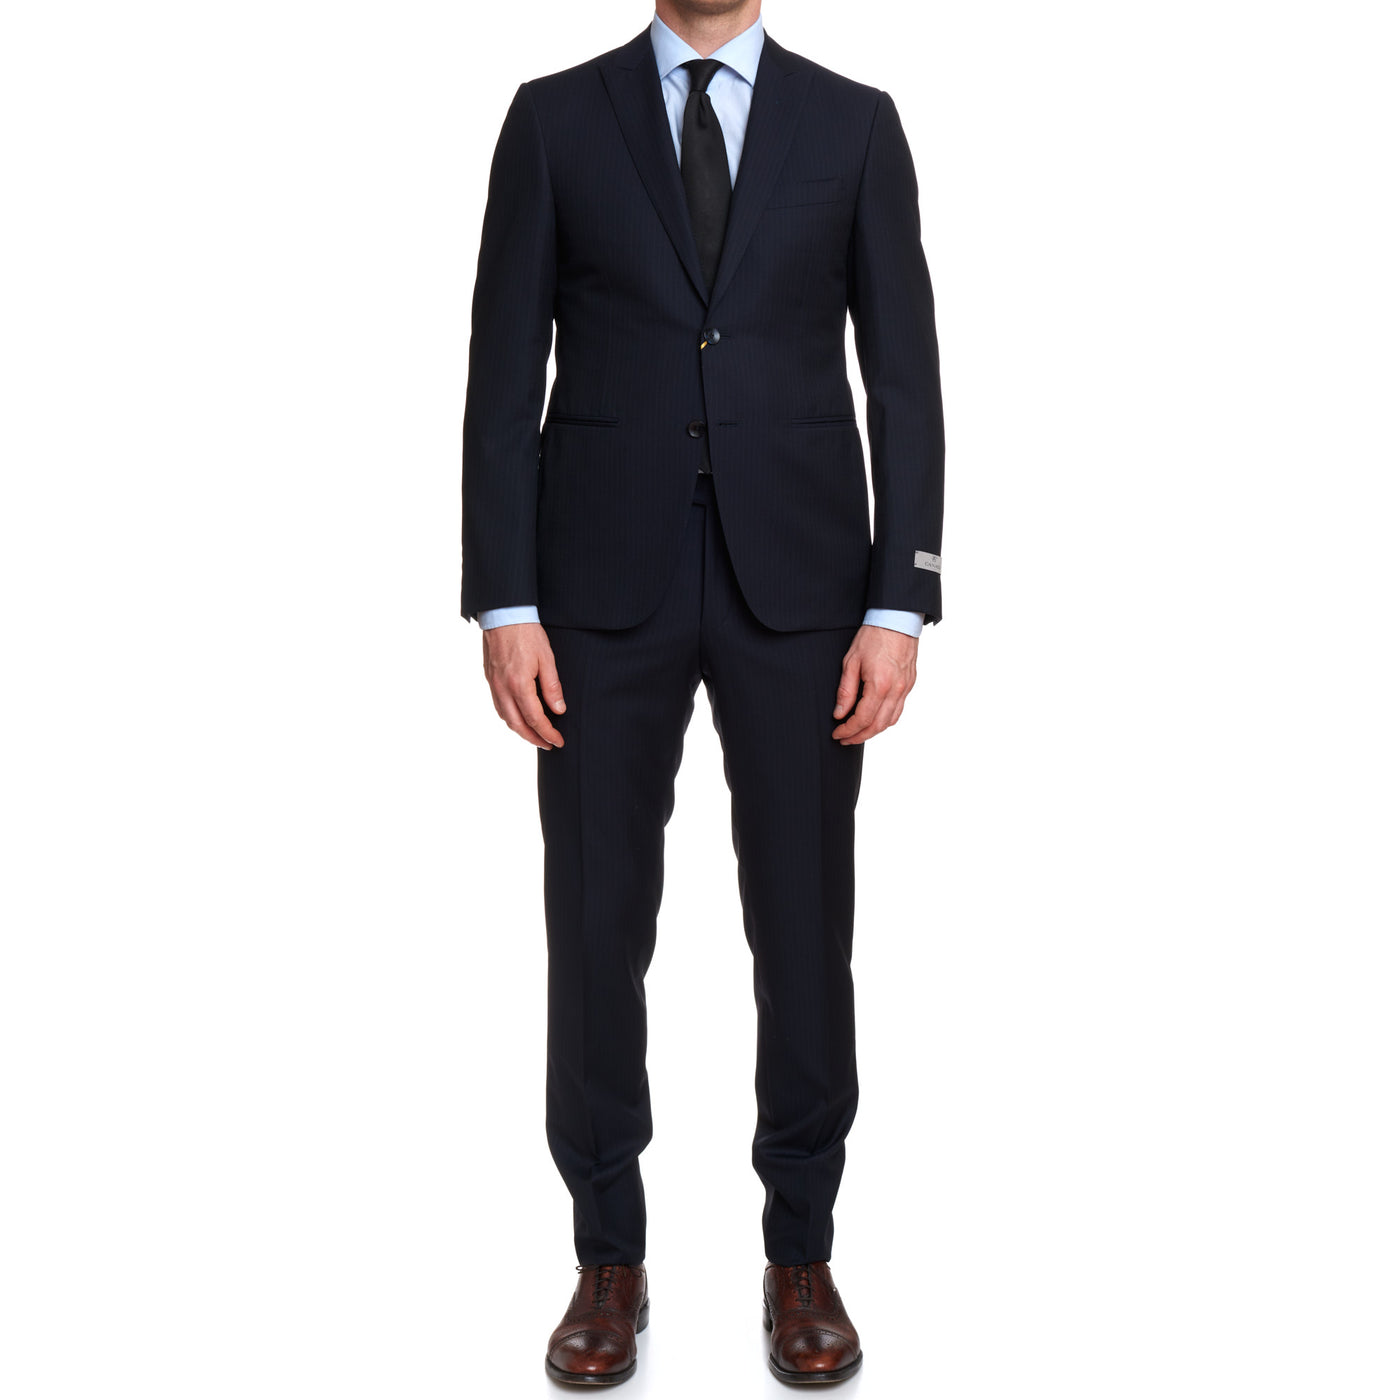 Luxury Men's Suits at Sartoriale